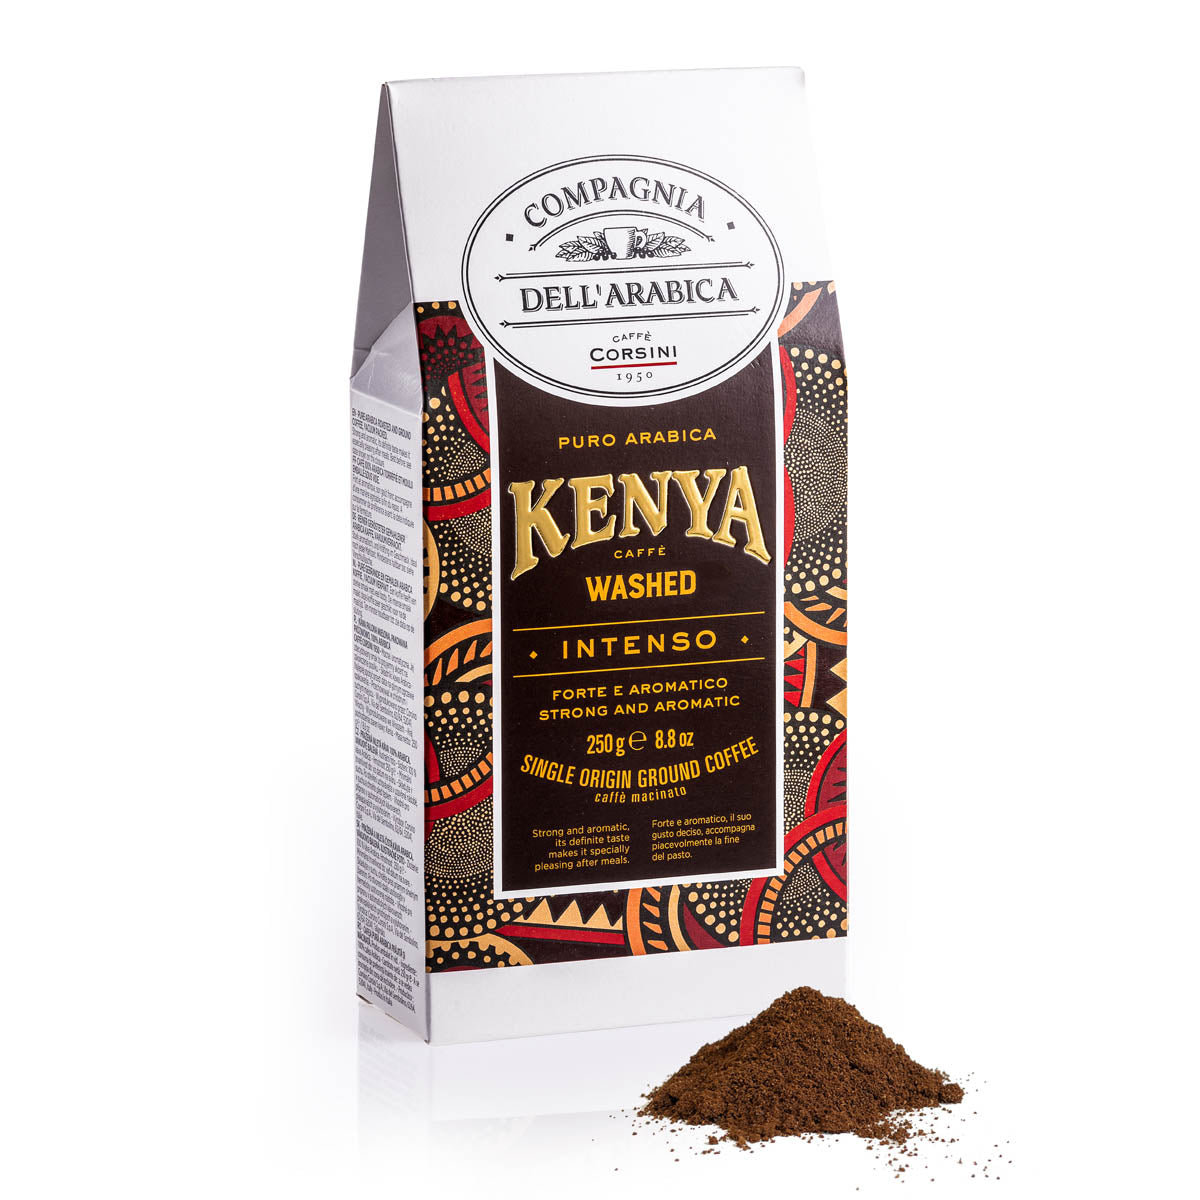 Caffè macinato | Kenya Washed | 100% Arabica | Confezione da 250g | Cartone con 12 confezioni